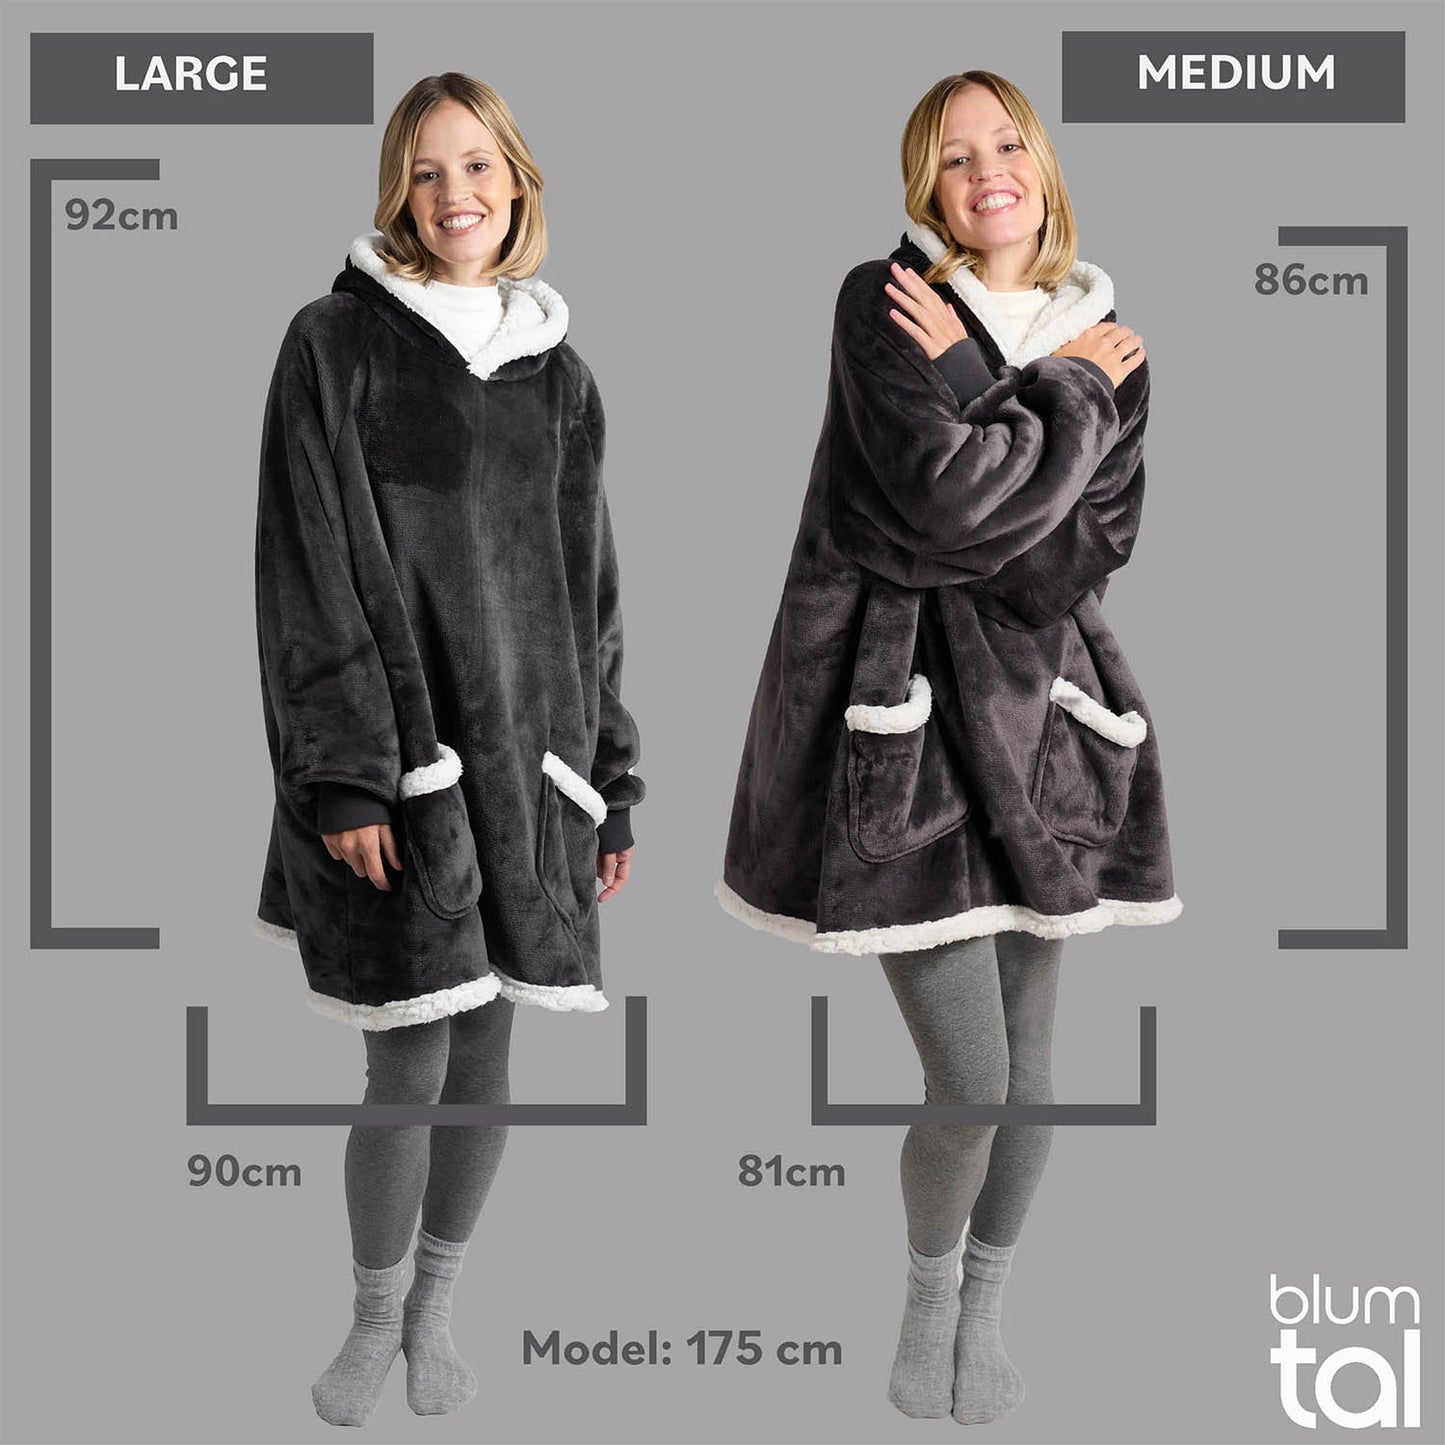 Größenvergleich von anthrazitfarbenen Sherpa-Kuscheljacken in Large und Medium, getragen von einer Frau, mit Maßangaben und Angabe der Modellgröße.